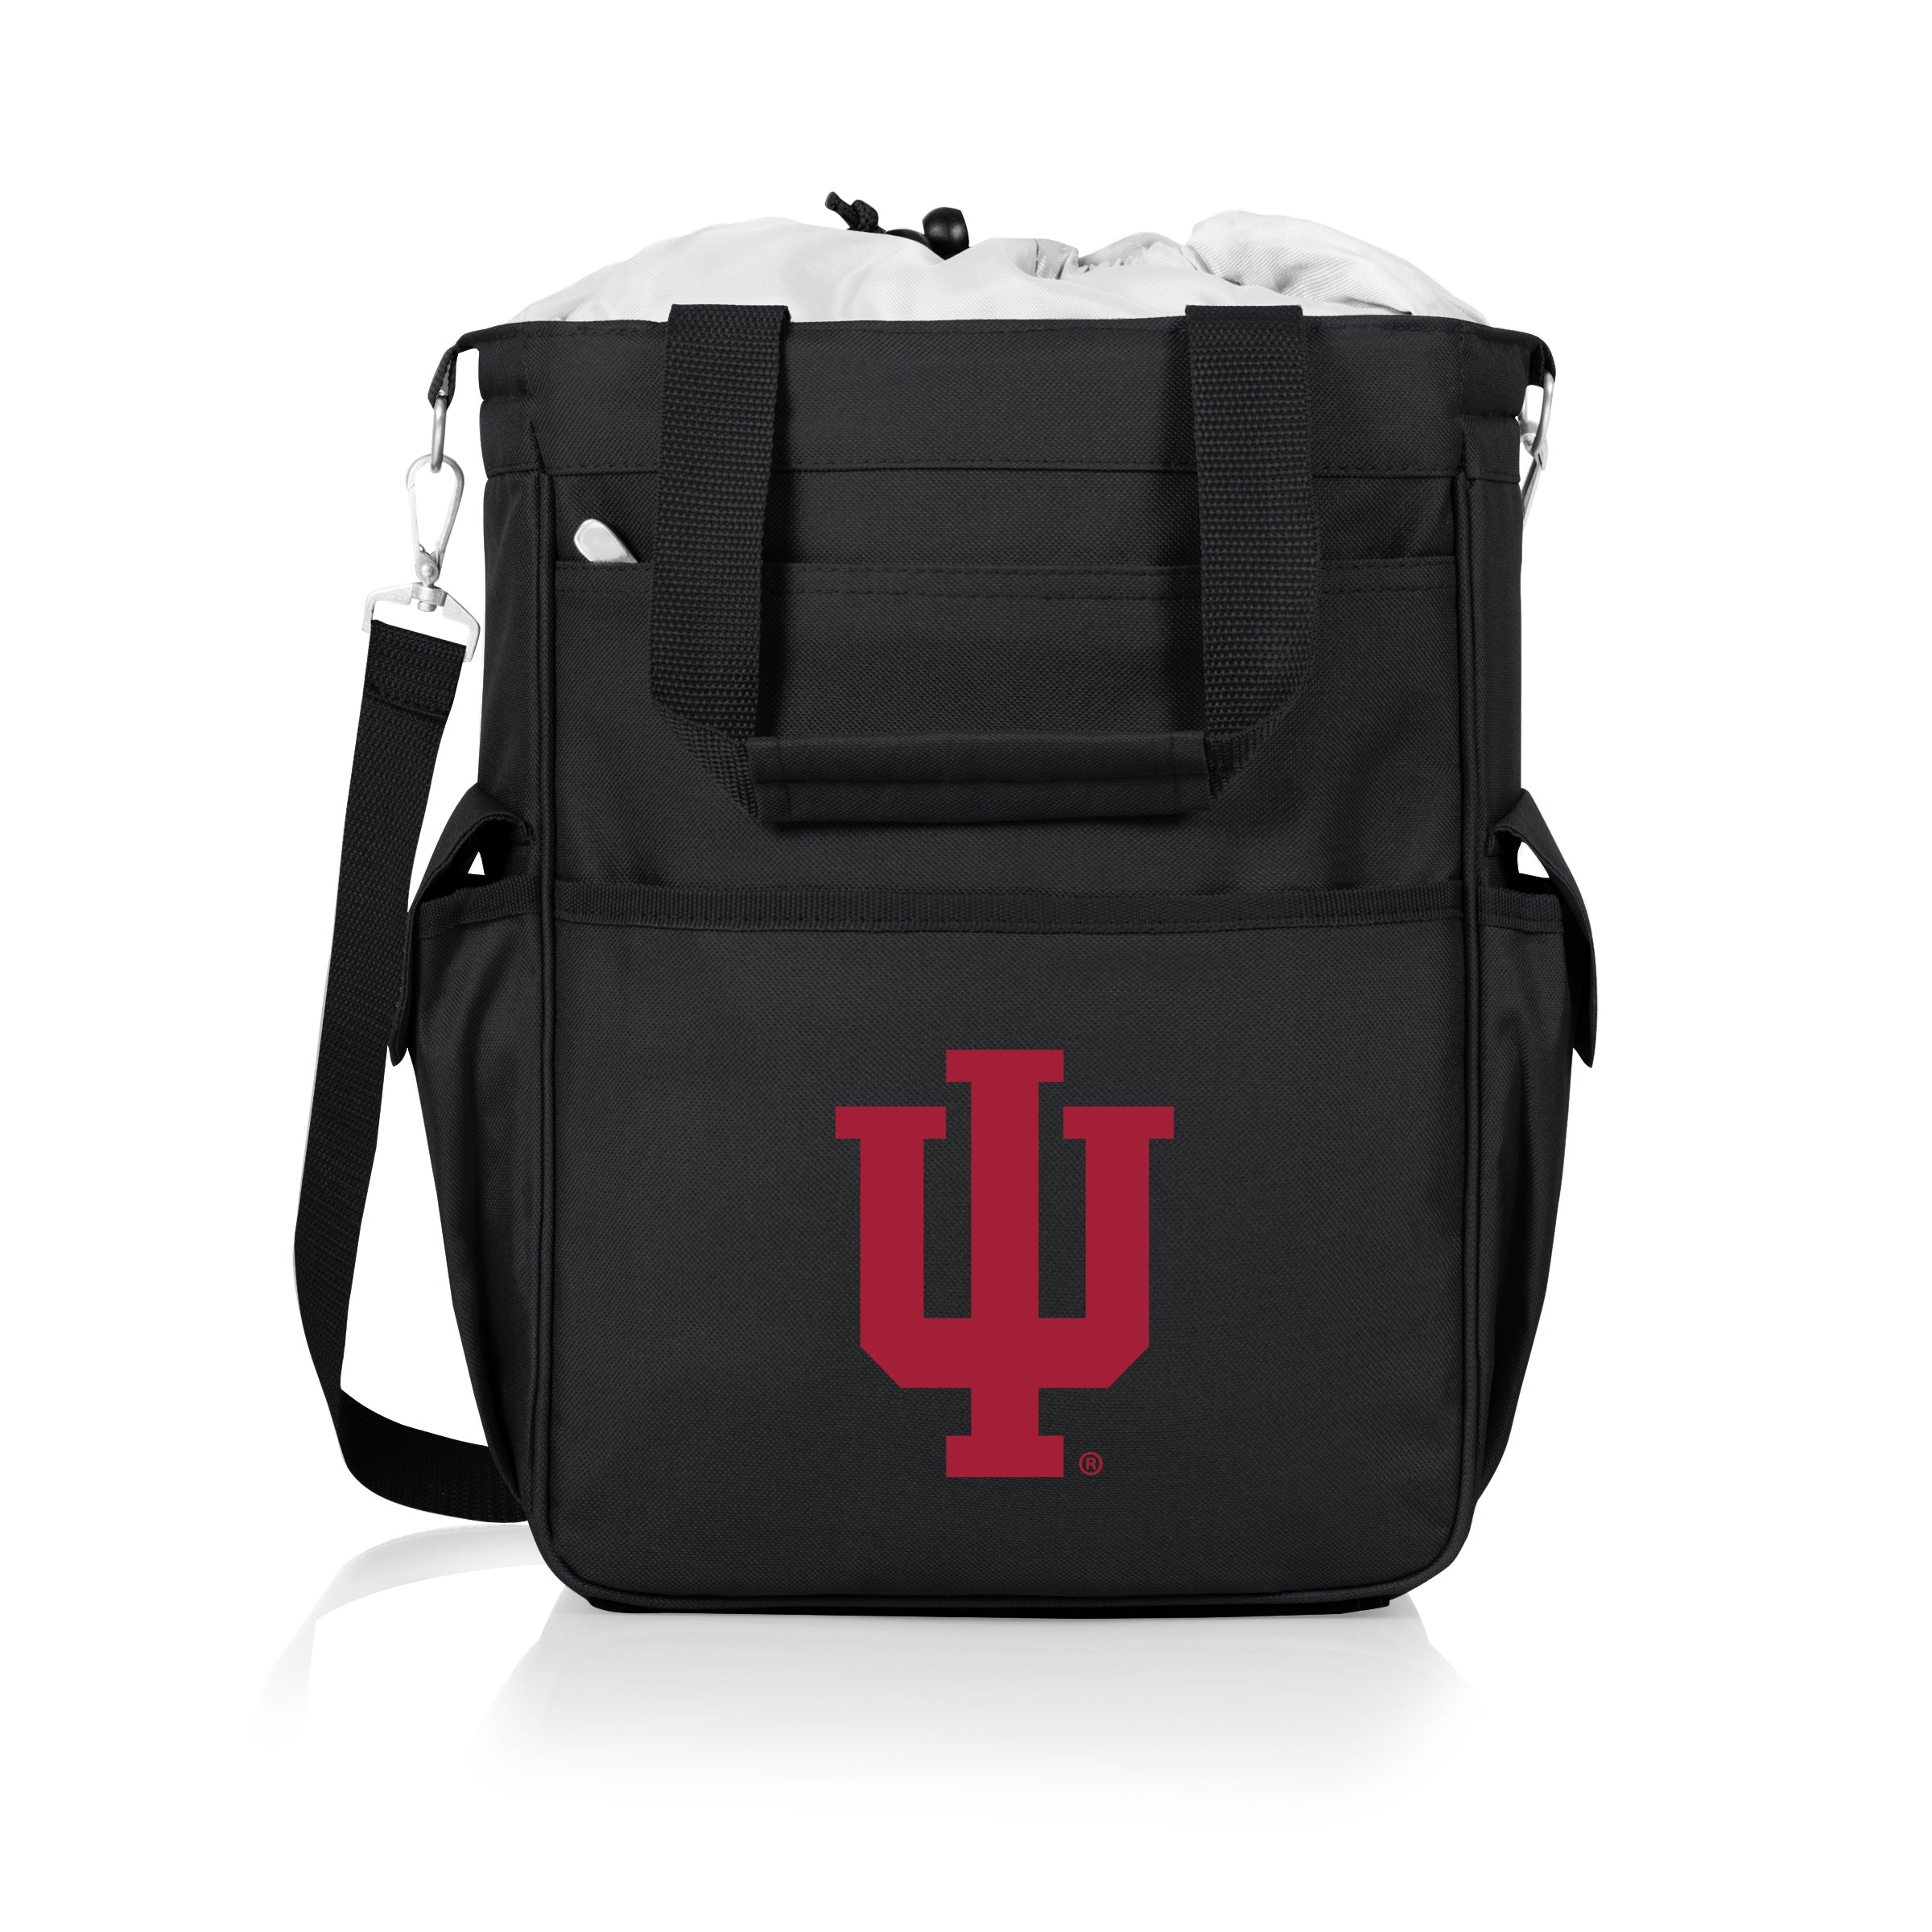 Indiana Hoosiers - Activo Cooler Tote Bag